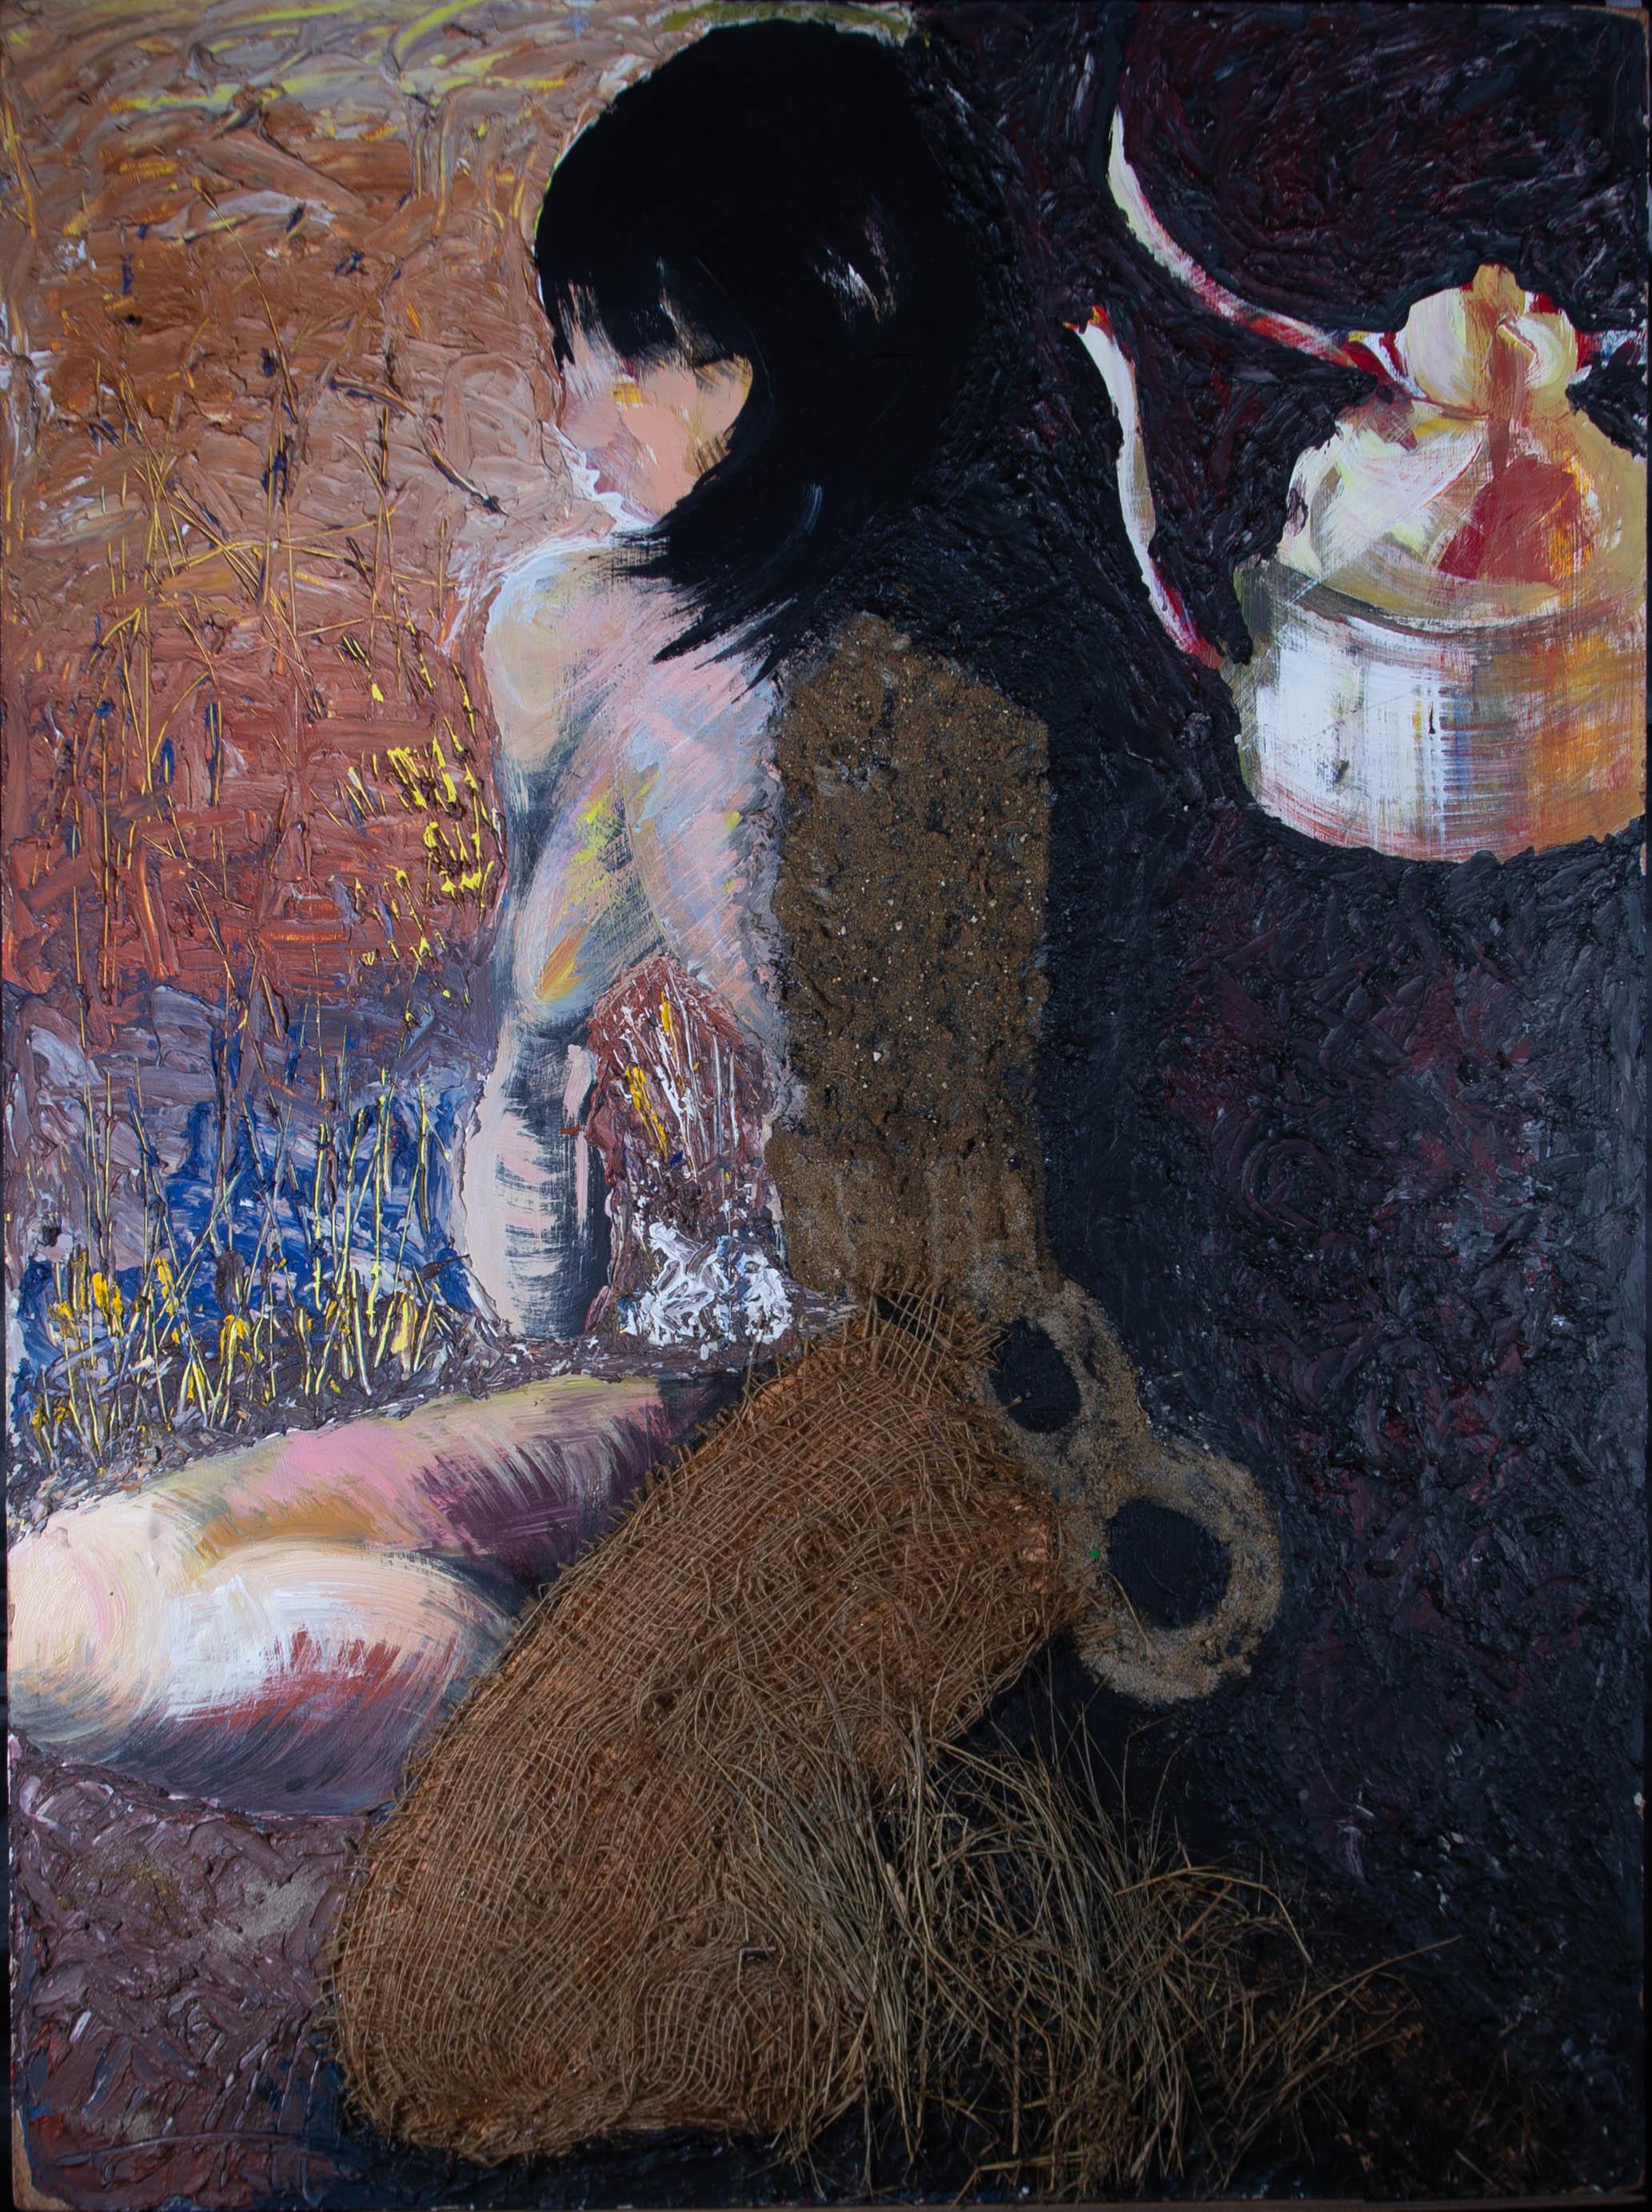 Un nu contemporain inhabituel aux techniques mixtes. L'artiste a utilisé un mélange d'huile, de peinture ménagère, de canevas, de sable et de paille pour créer la forme d'une jeune femme aux cheveux noirs, assise dans un intérieur sombre. Le tableau